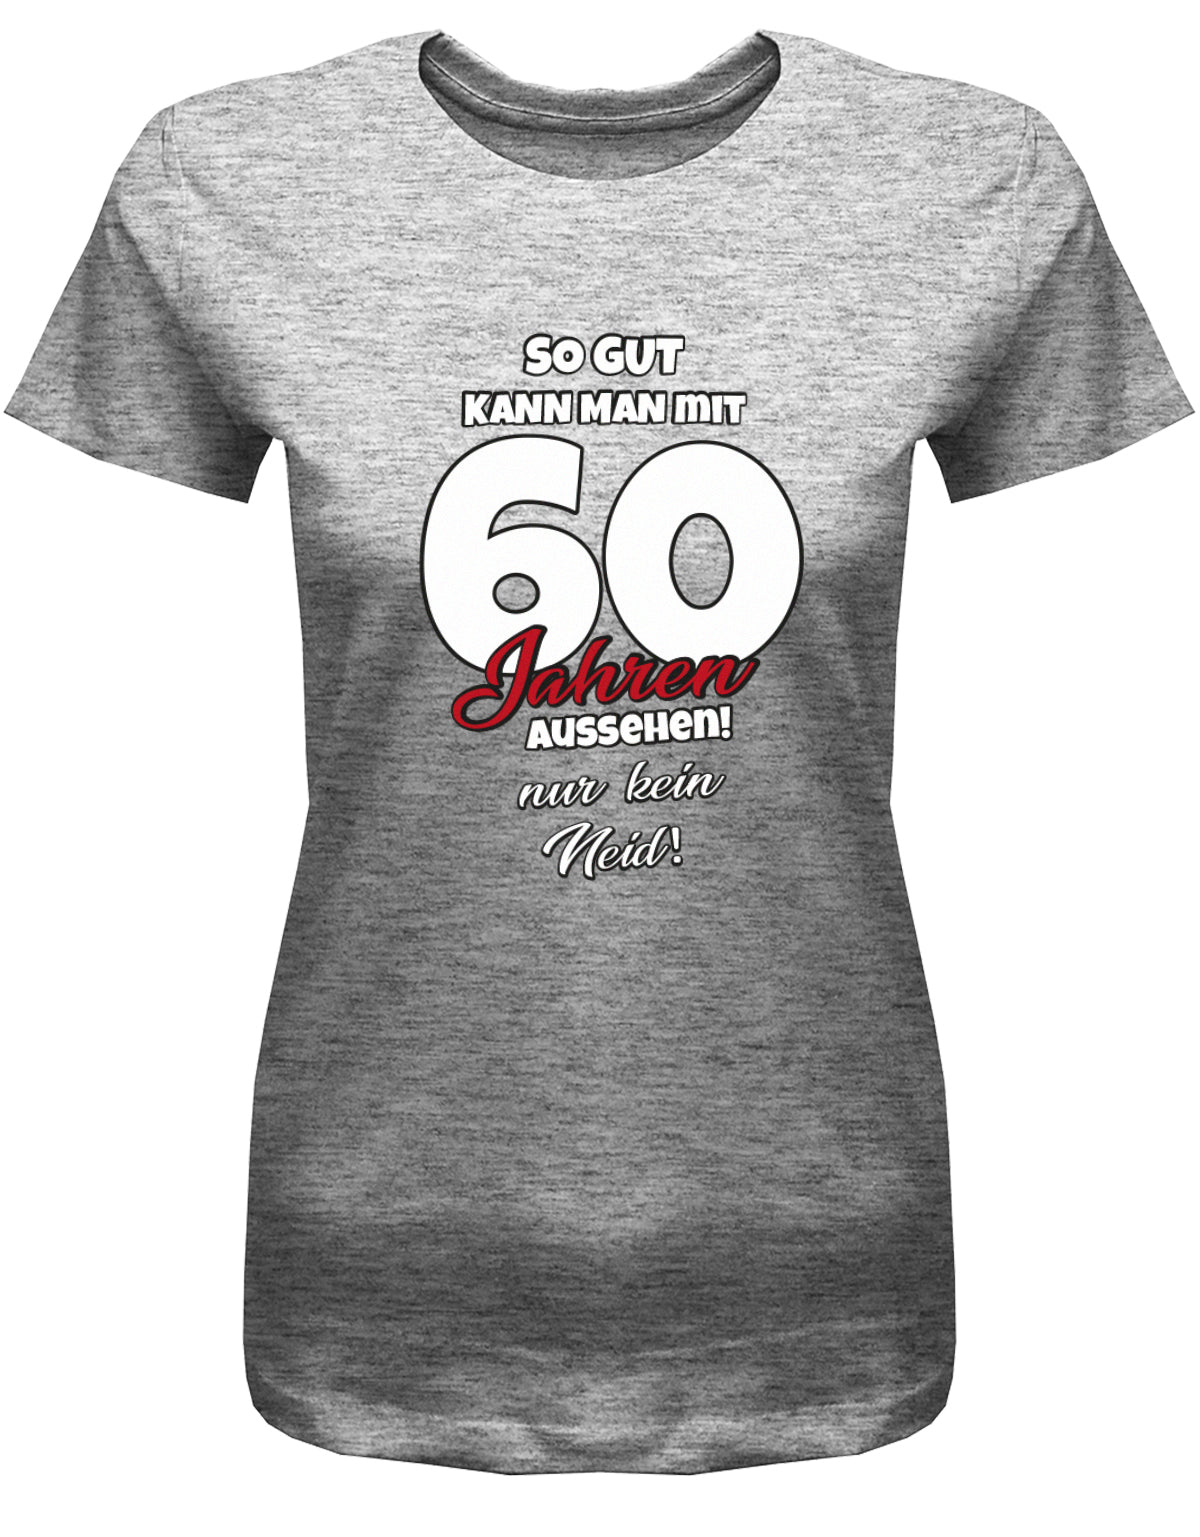 Lustiges T-Shirt zum 60 Geburtstag für die Frau Bedruckt mit So gut kann man mit 60 Jahren aussehen! Nur kein Neid! Grau